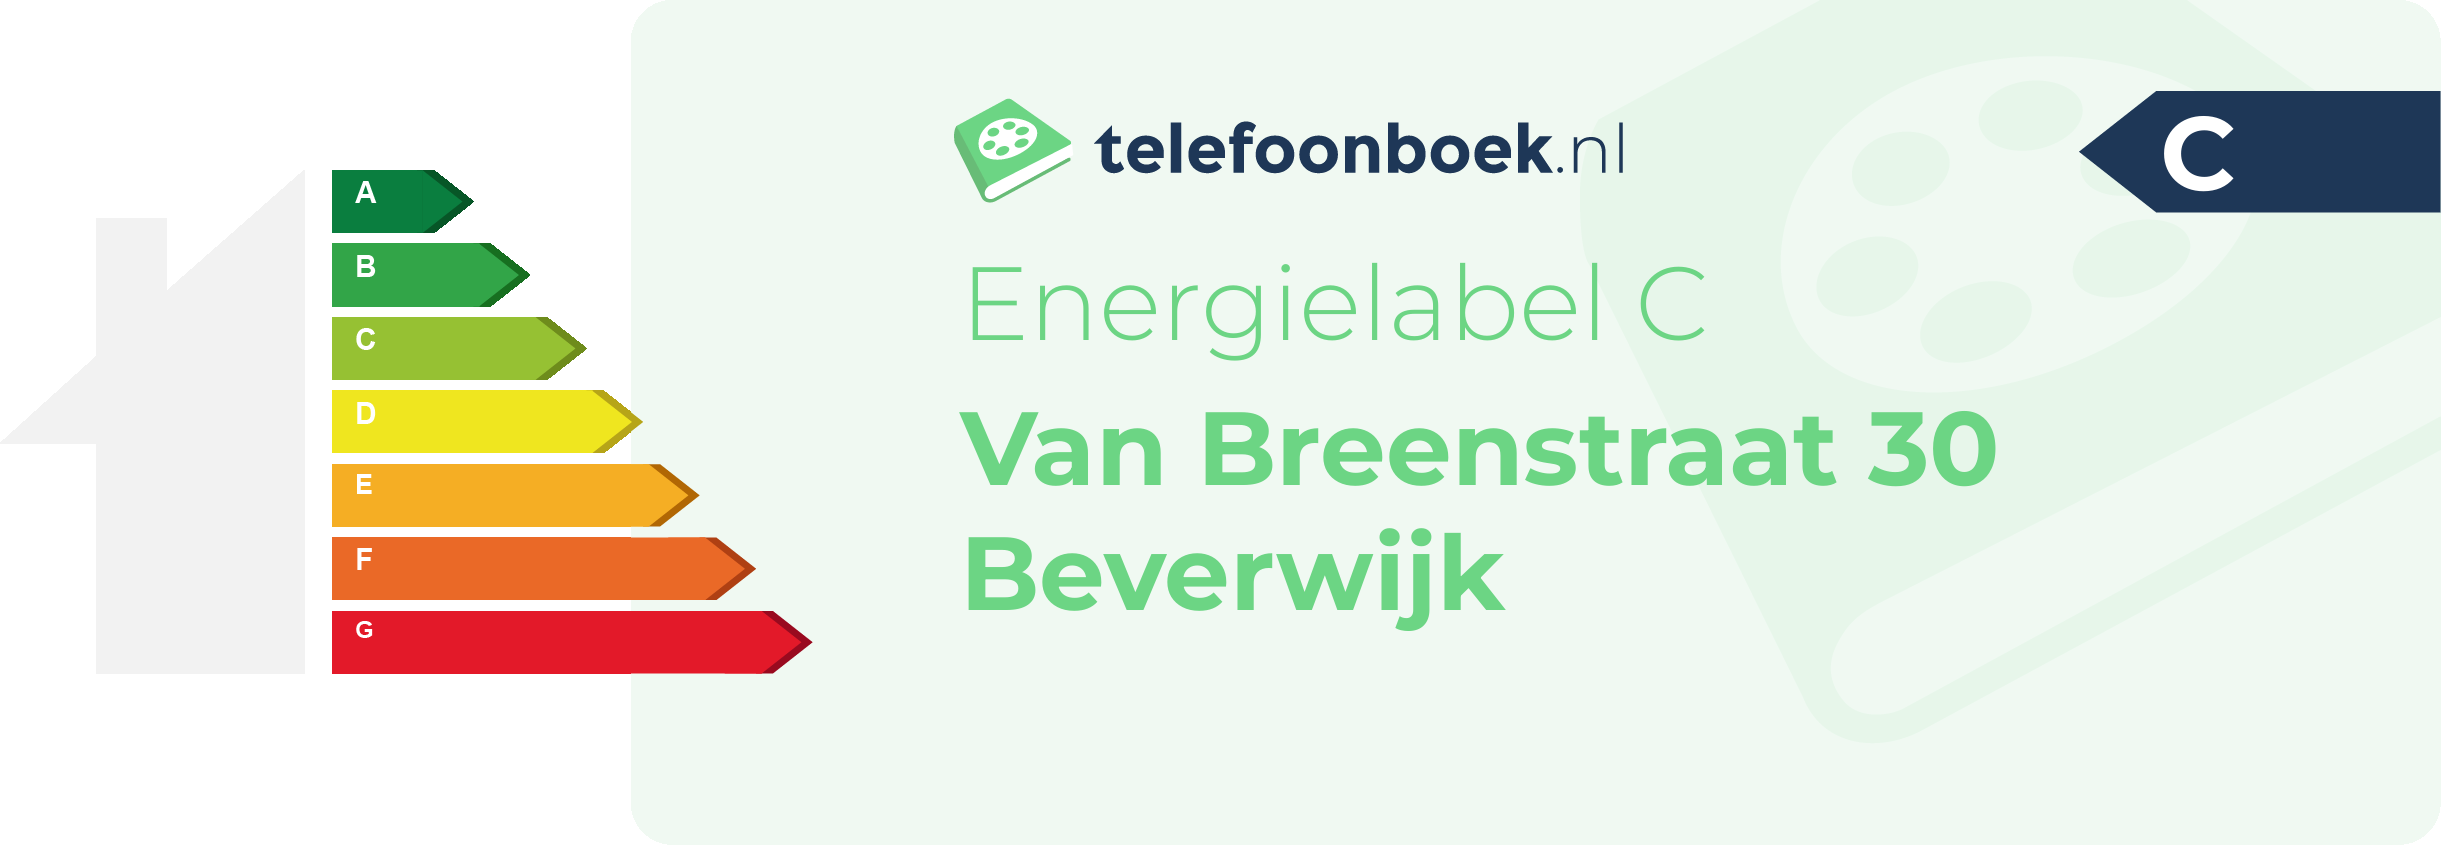 Energielabel Van Breenstraat 30 Beverwijk